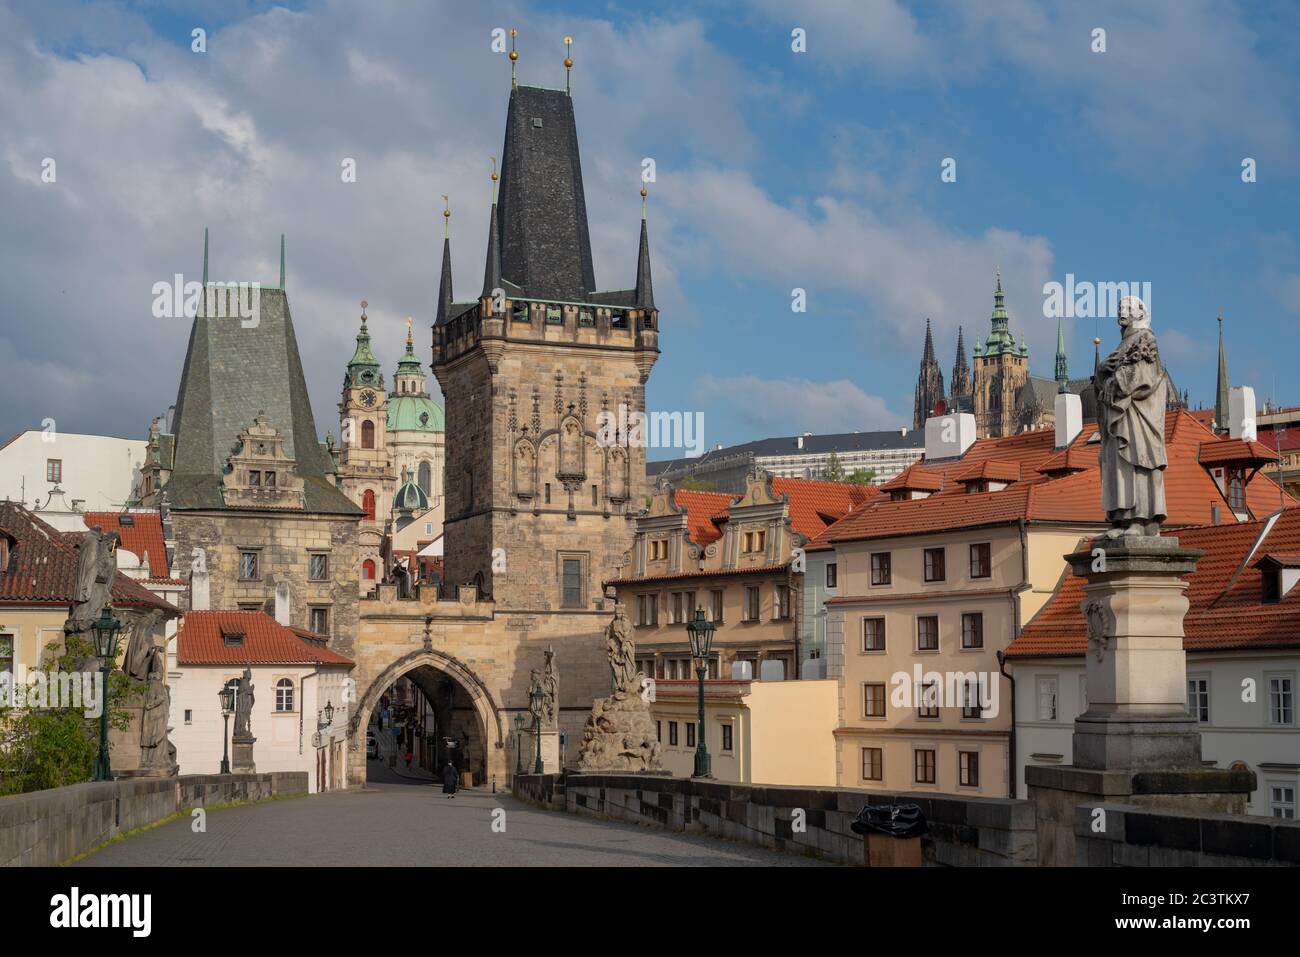 Testa di ponte della città minore di Charles Bridge con porta gotica e torri. La chiesa di San Nicola e il castello di Praga sono visibili in lontananza. Foto Stock